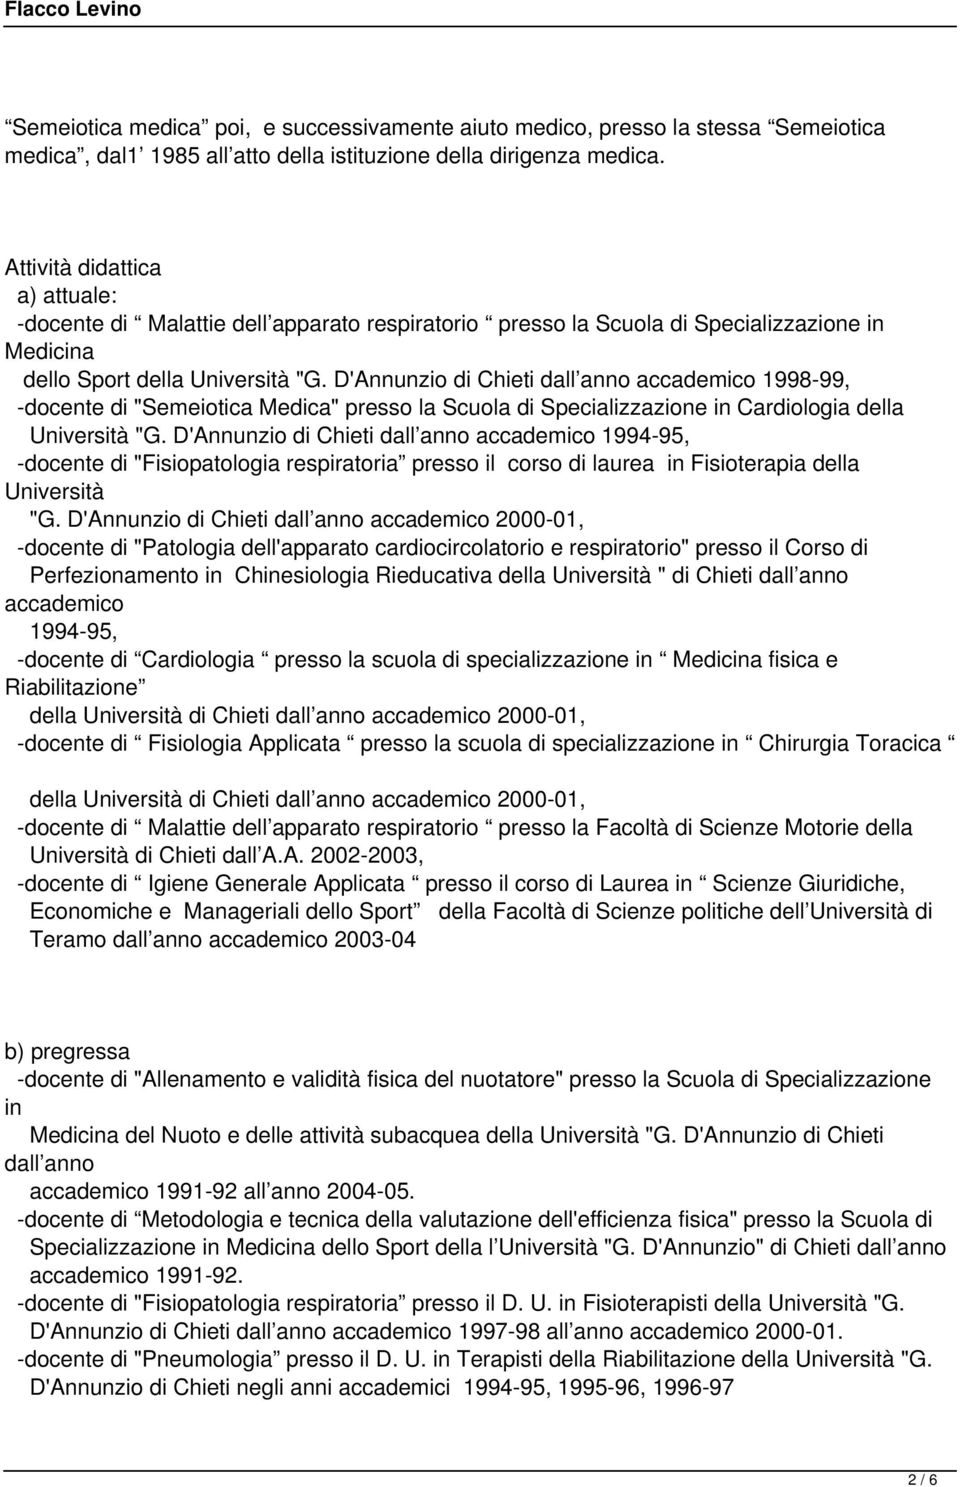 D'Annunzio di Chieti dall anno accademico 1998-99, -docente di "Semeiotica Medica" presso la Scuola di Specializzazione in Cardiologia della Università "G.